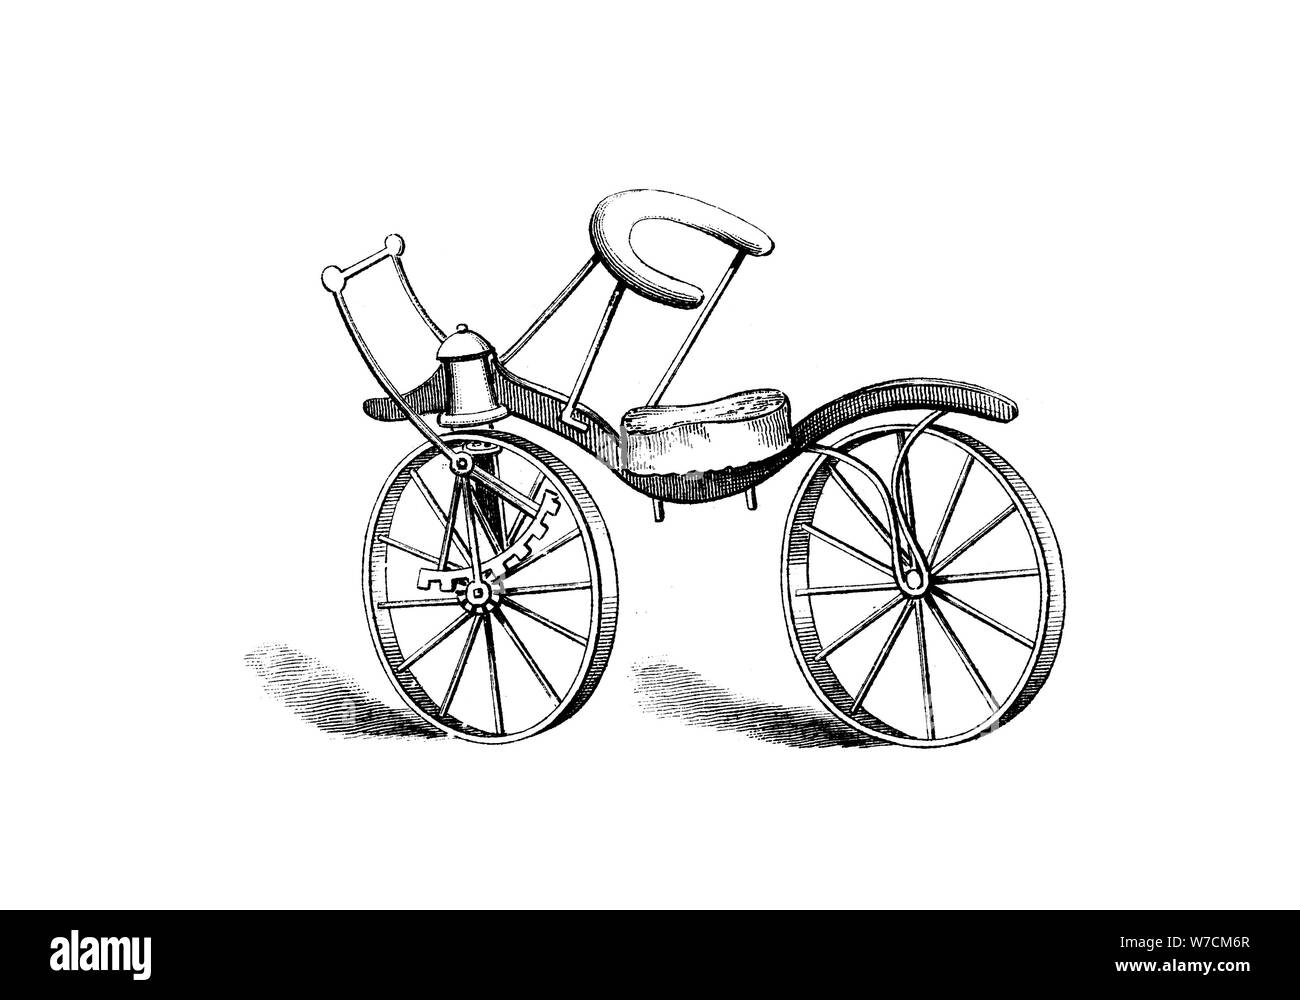 Lewis Gompertz der Verbesserung auf Freiherr von Drais's Bicycle, 1821. Artist: Unbekannt Stockfoto